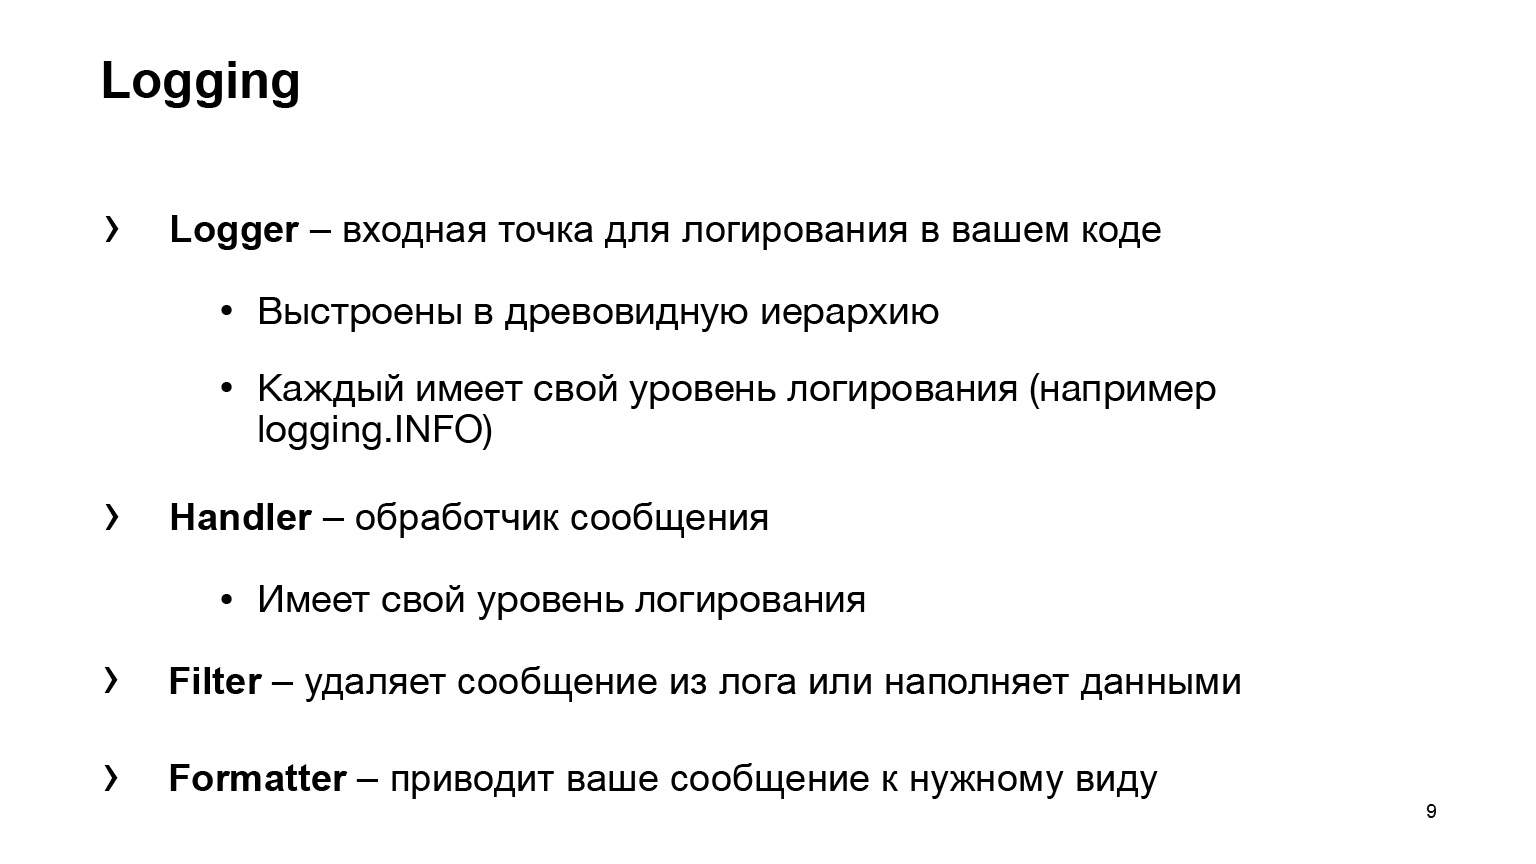 Удобное логирование на бэкенде. Доклад Яндекса - 6